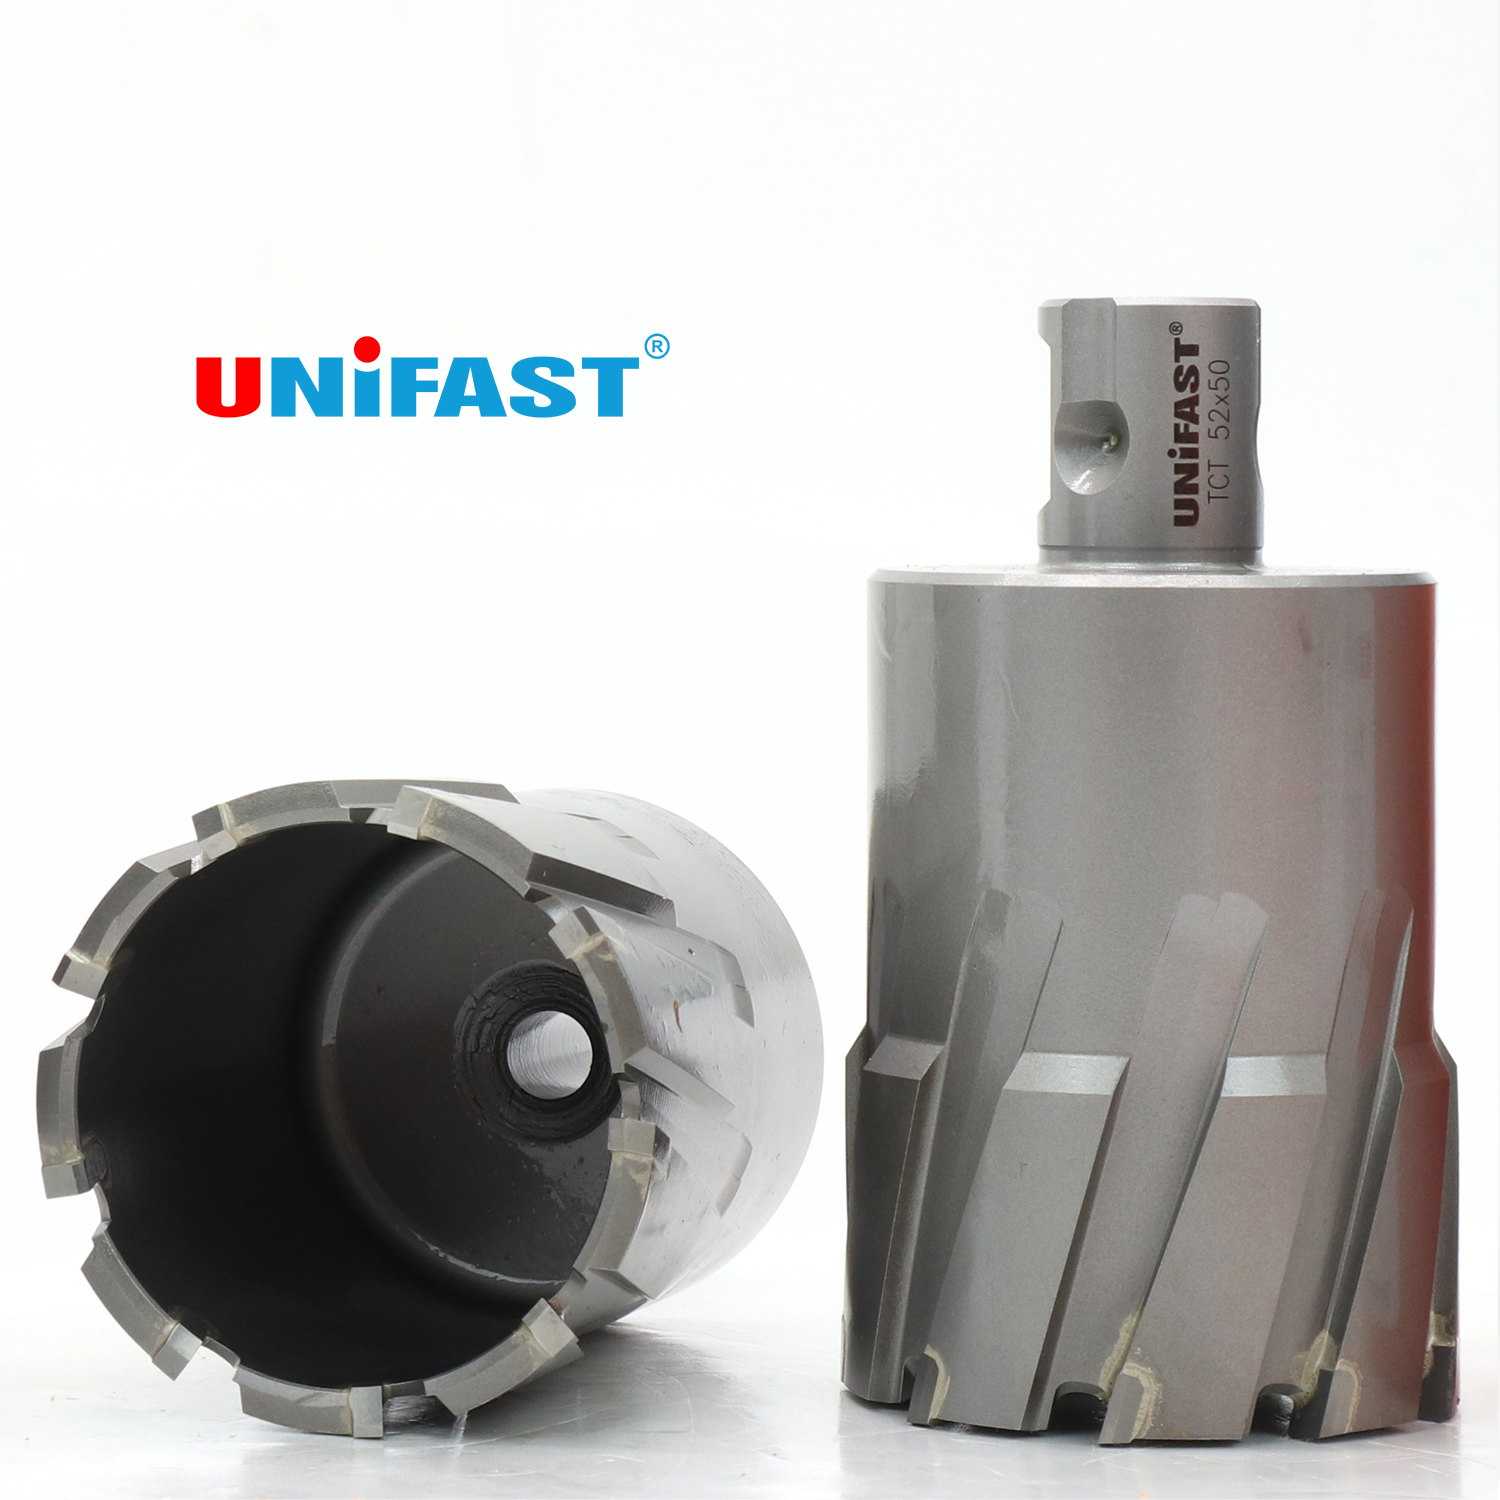 Mũi khoan từ hợp kim UNIFAST TCT Ø 52 mm khoan sâu tối đa 50 mm sử dụng trên mọi loại máy khoan đế từ.